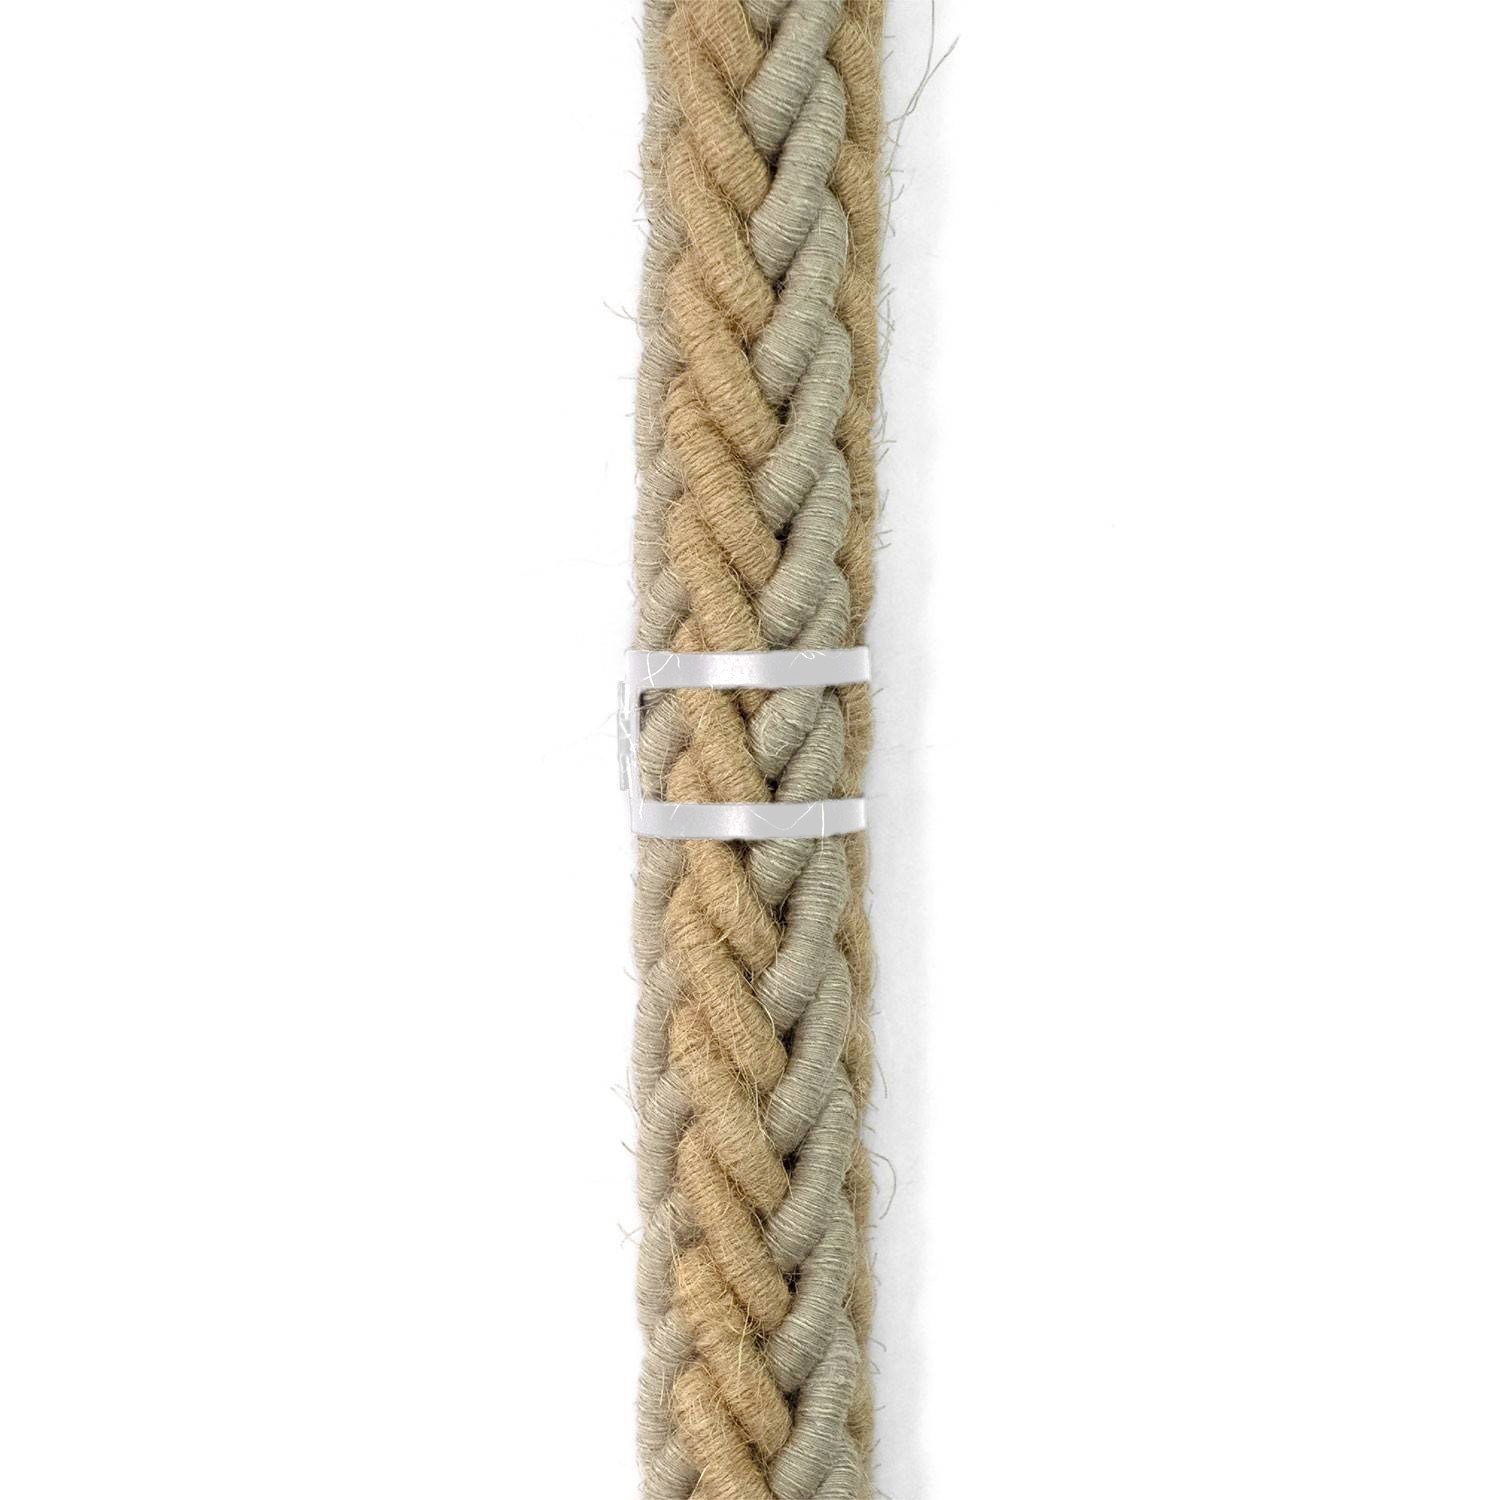 Kabelklämma i metall för repkablar med en diameter på 24 mm